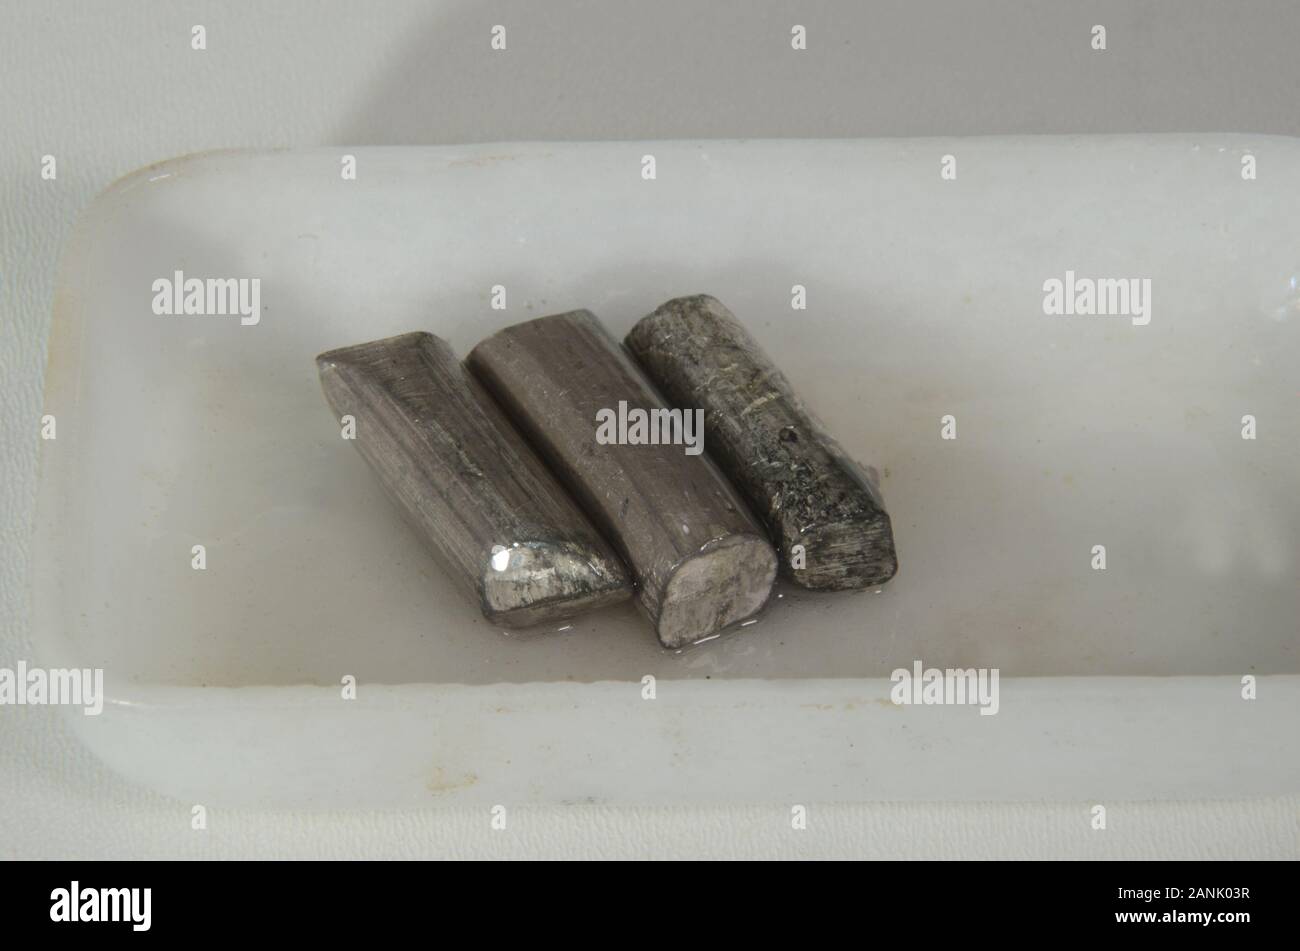 Primo piano su campioni dell'elemento metallico litio (Li) Il campione deve rimanere coperto di olio per evitare la corrosione. Foto Stock